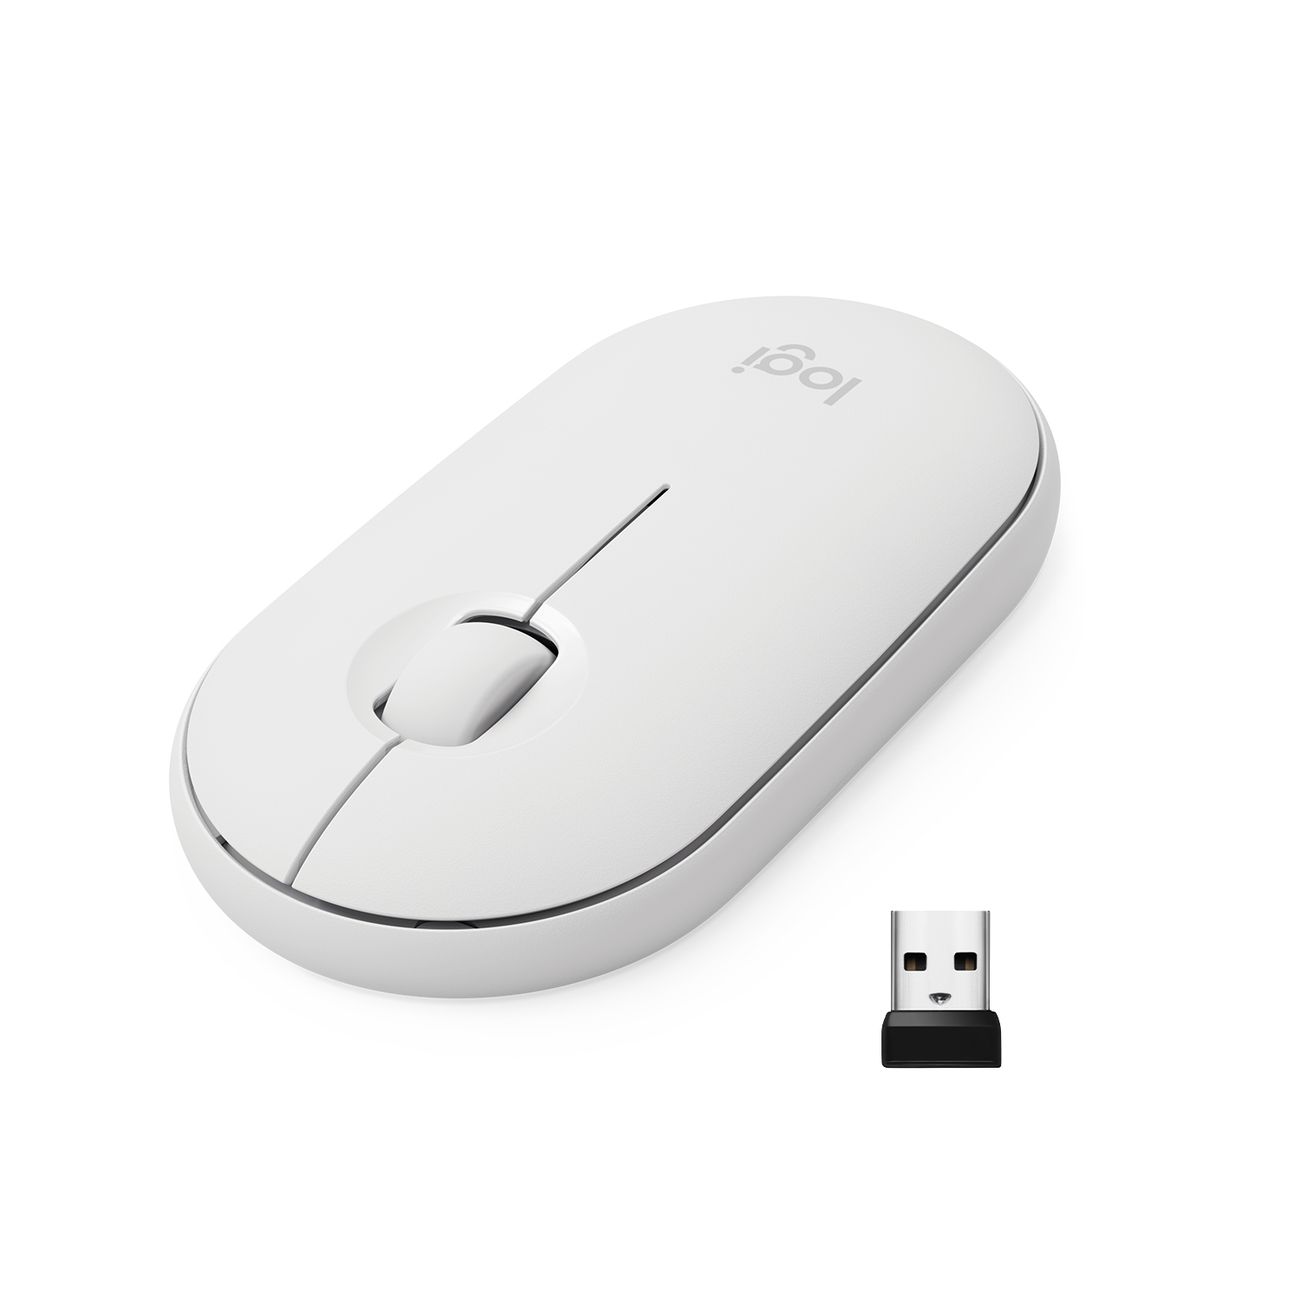 Мышь беспроводная Logitech M350 Pebble Mouse, white (910-005716) мышь беспроводная logitech pebble m350 graphite 910 005718